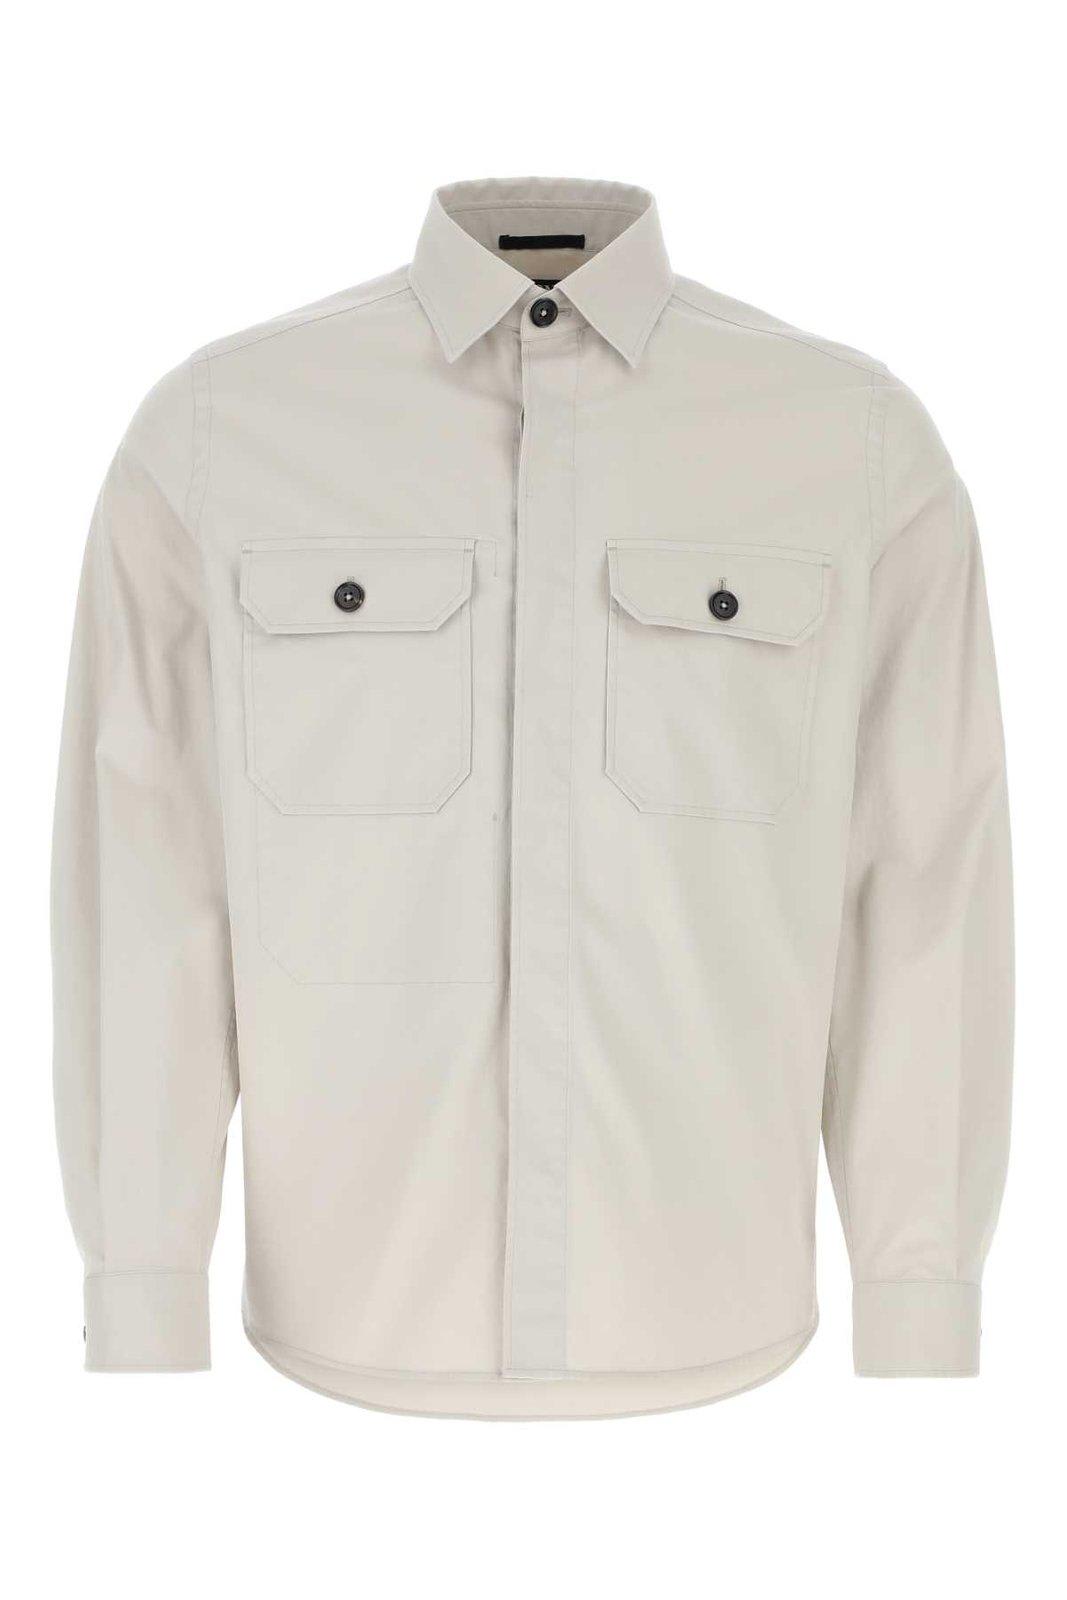 Ermenegildo Zegna Long Sleeved Pocket-detailed Shirt